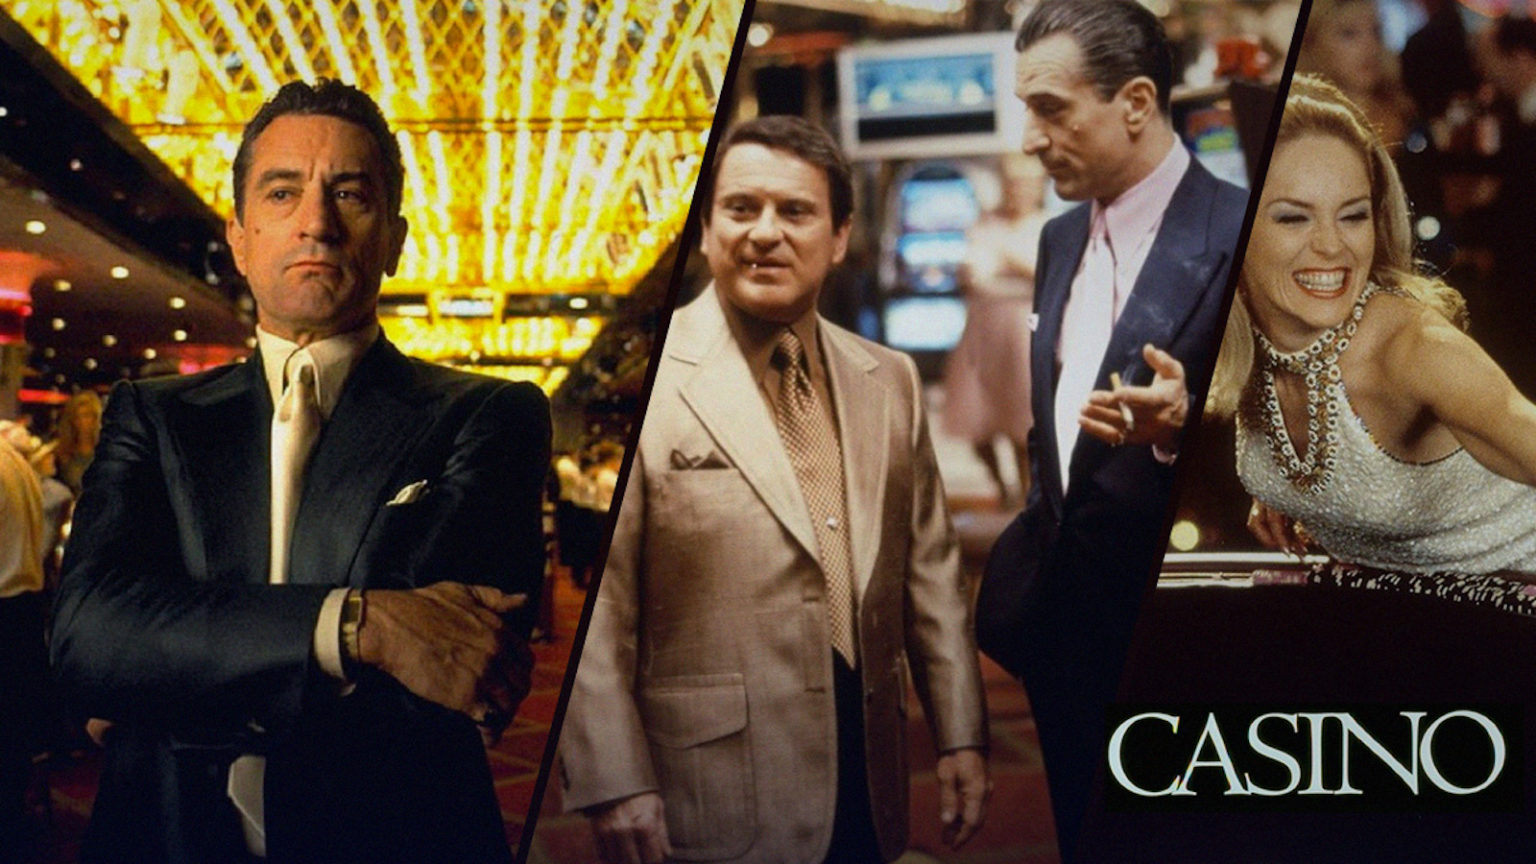 casino movie online free